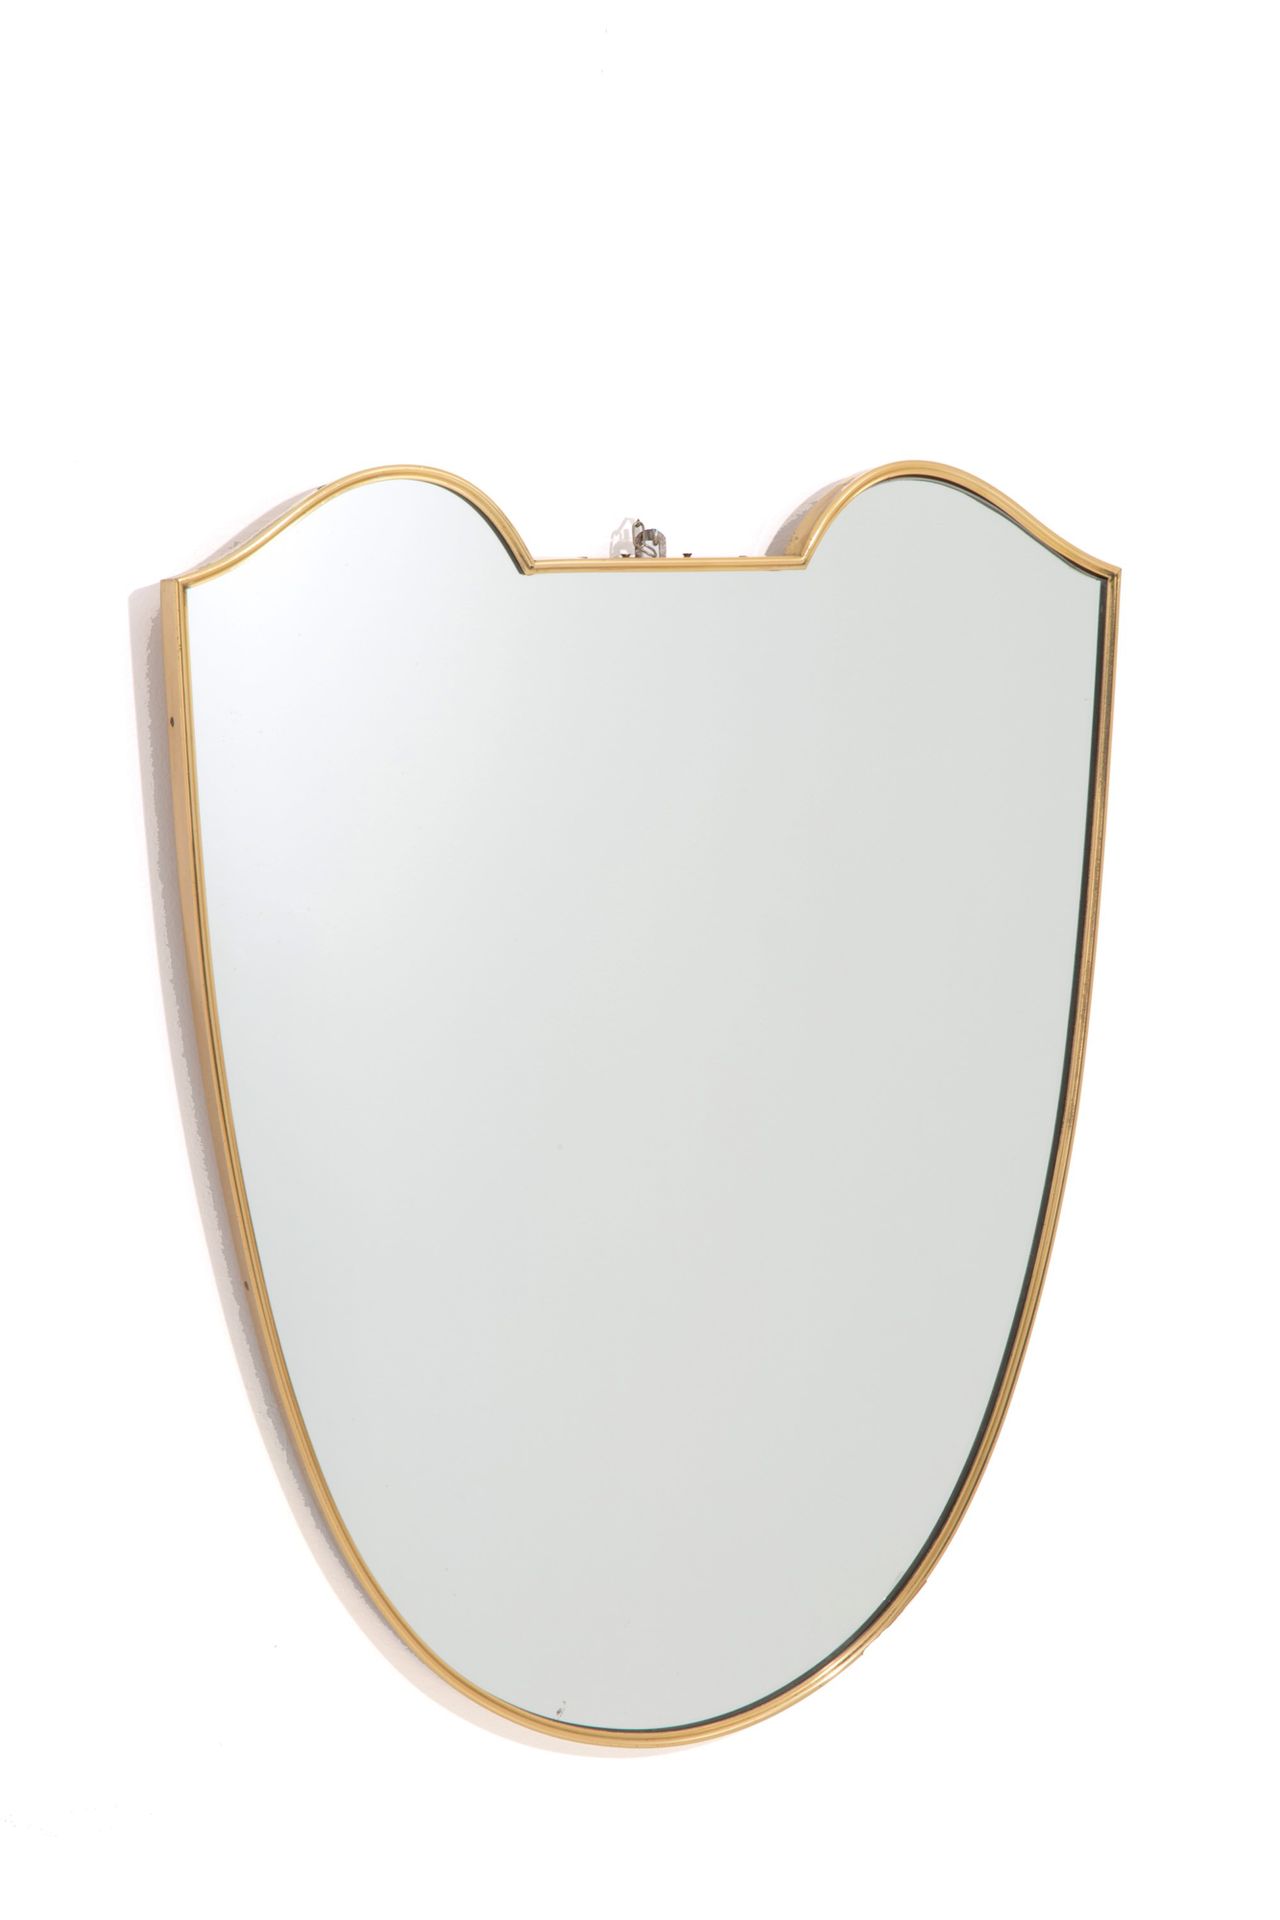 MIRROR Specchio a scudo in ottone. Anni '50. 72,5x54x2,5 cm ca.